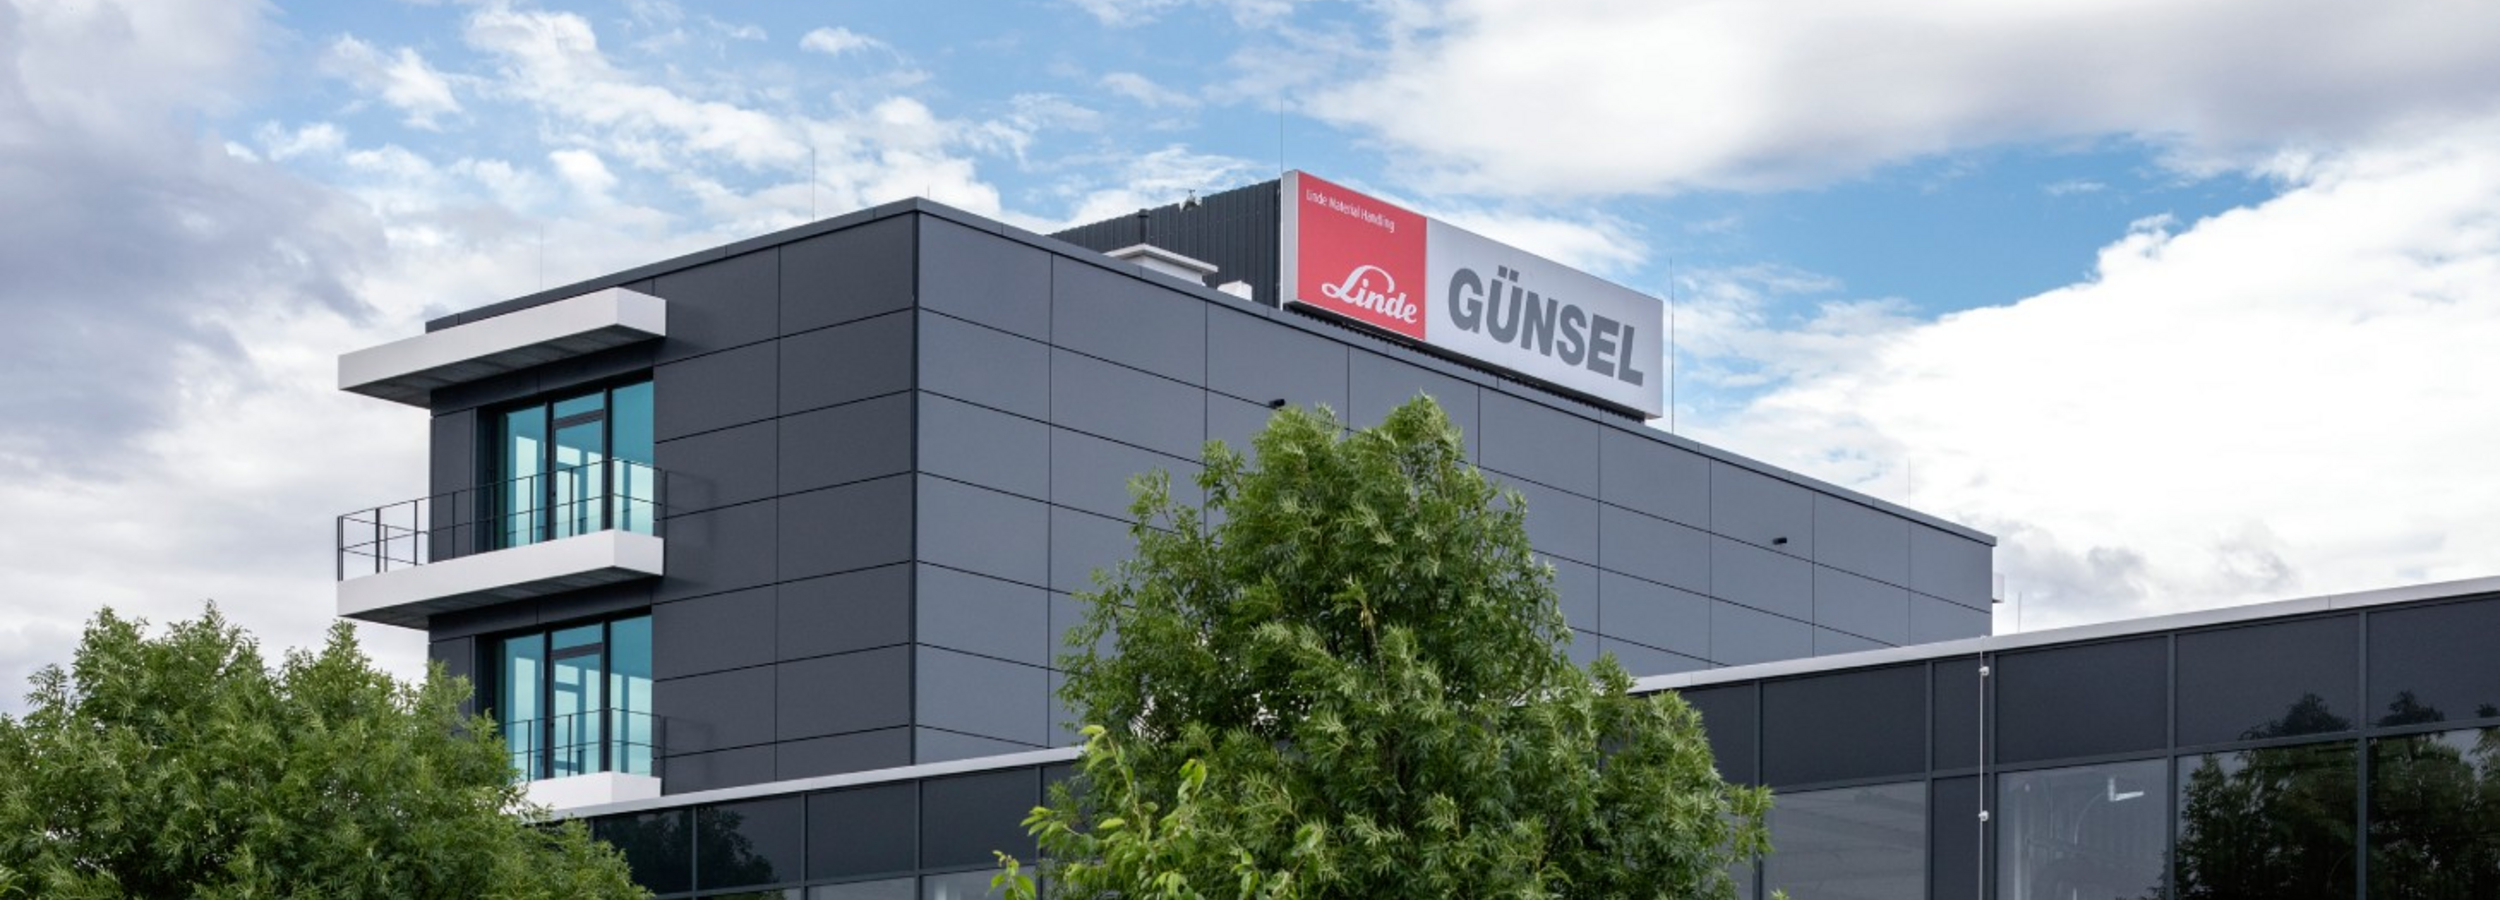 Günsel Fördertechnik GmbH, Leipzig